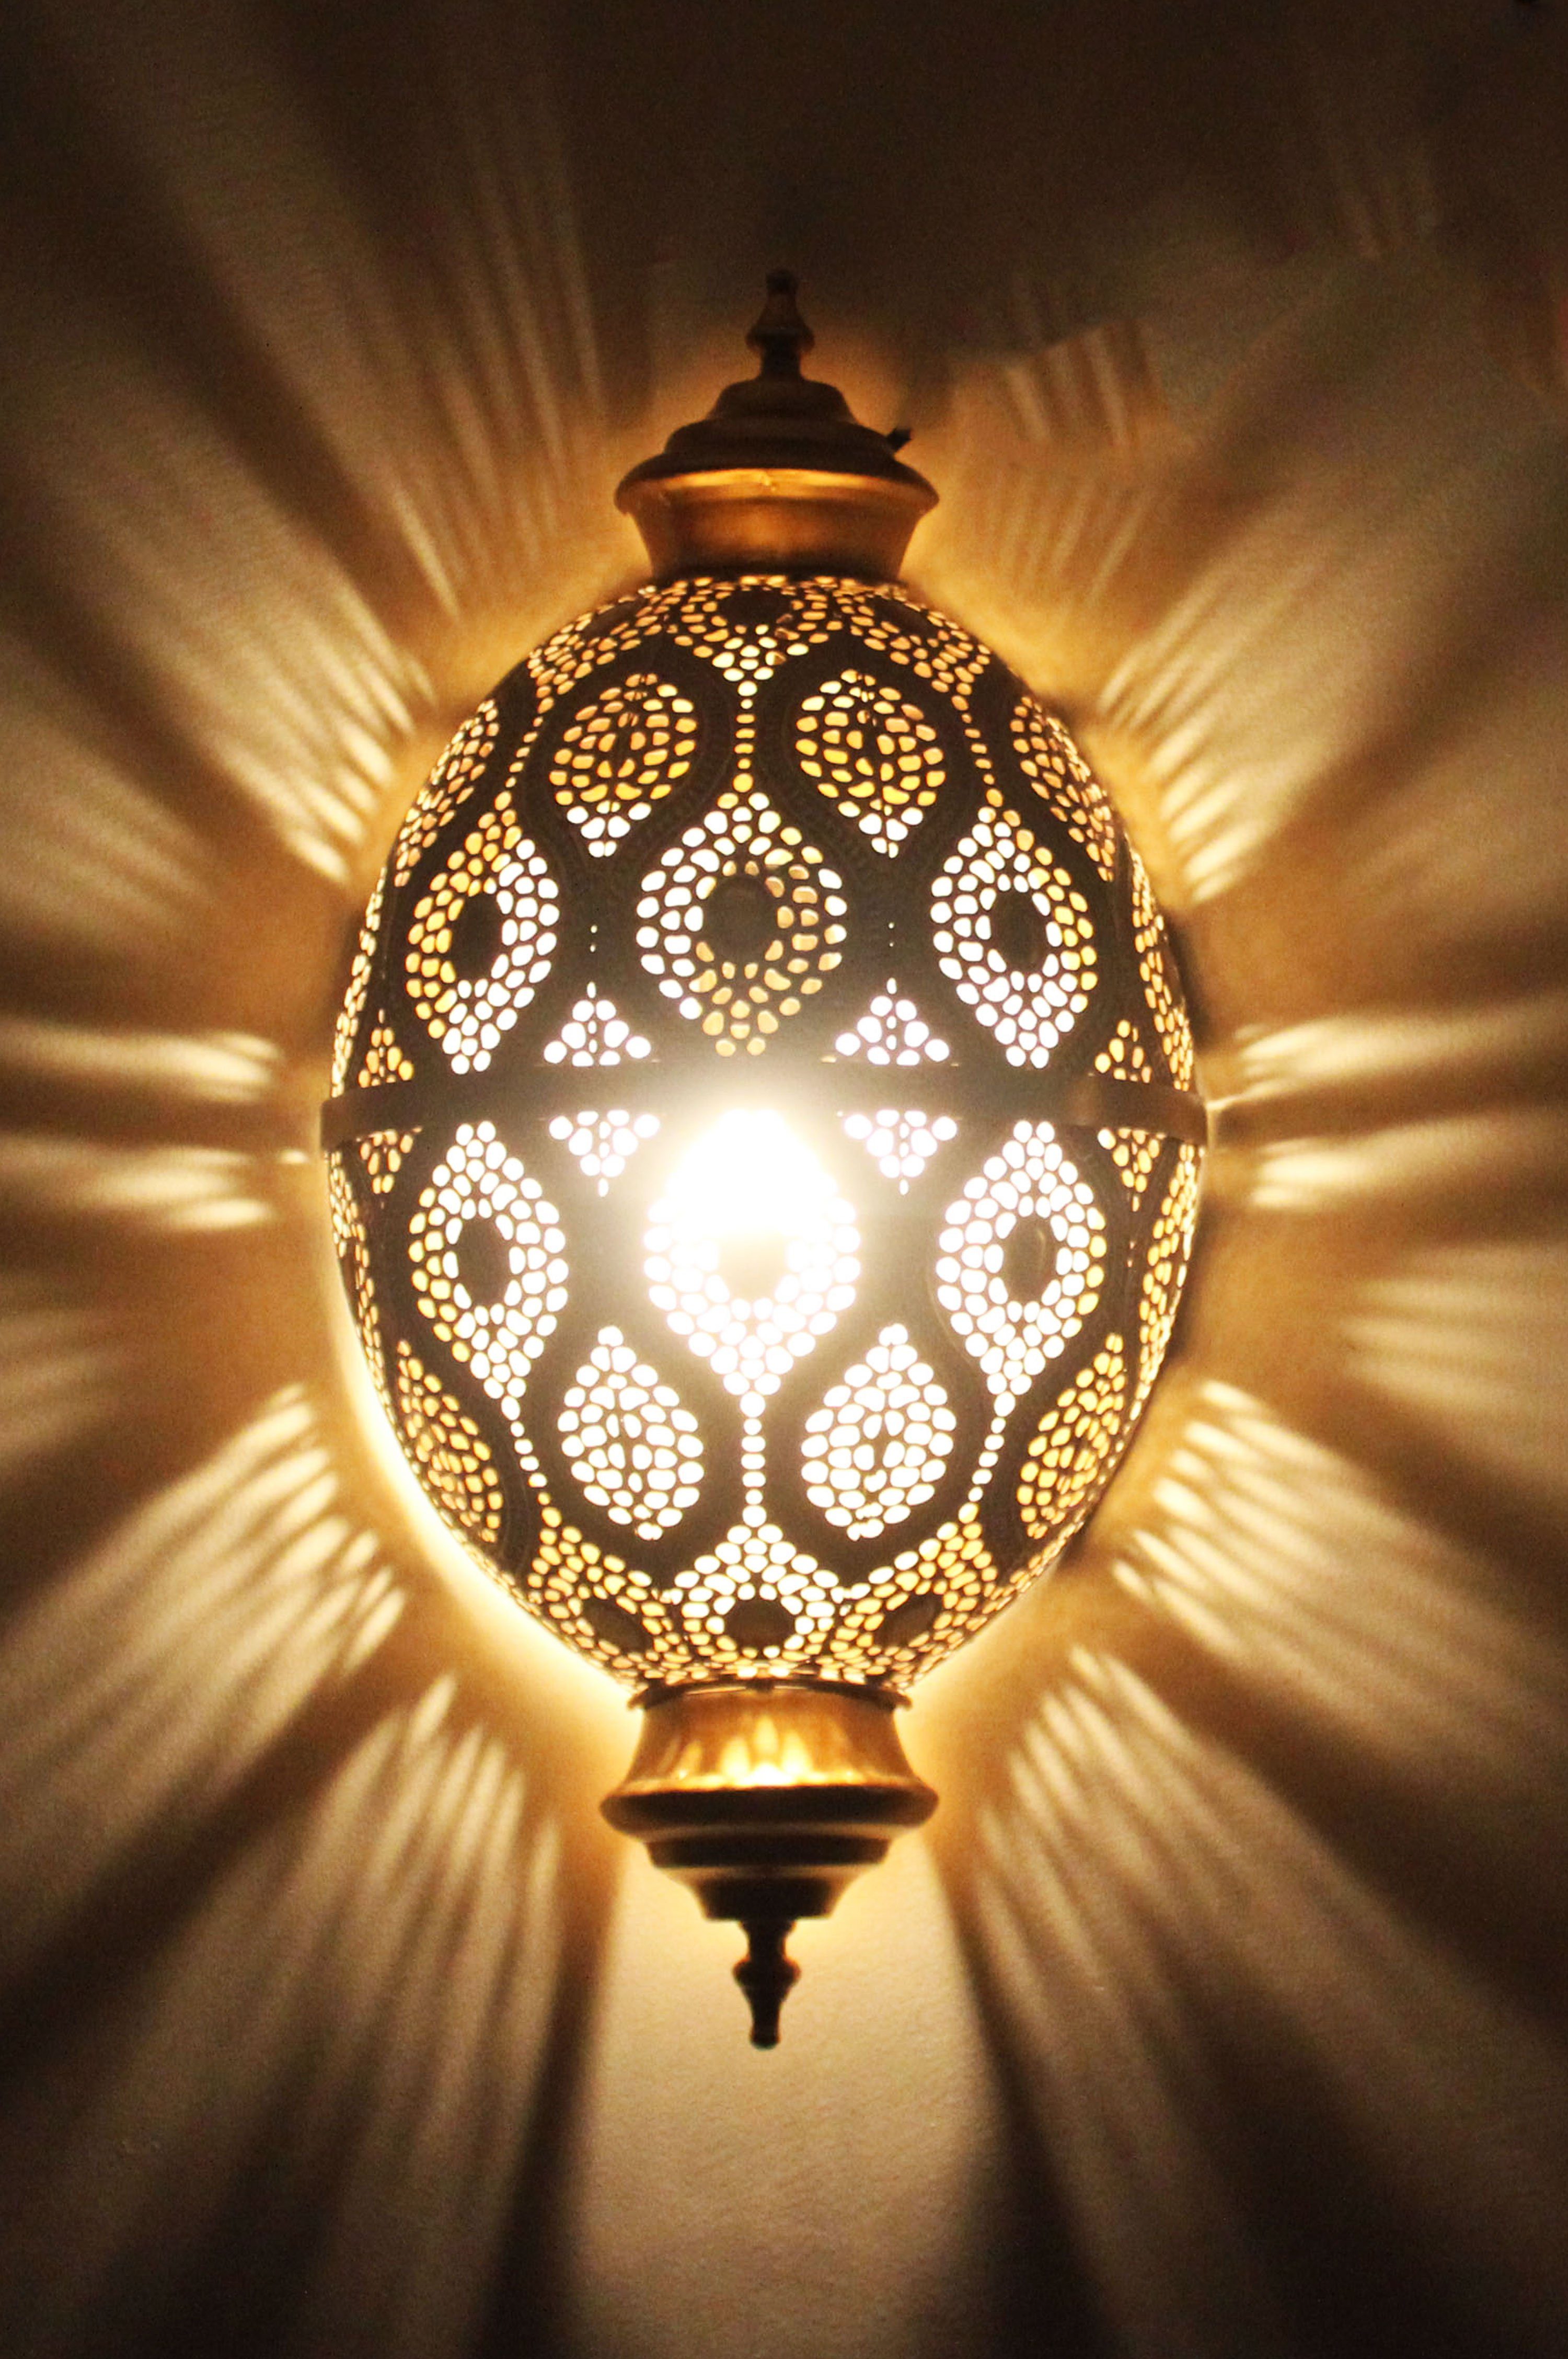 Marrakesch Orient & Mediterran Interior Wandleuchte Orientalische Lampe  Wandleuchte Afzal E14, Marokkanische Metall Vintage Wandlampe Leuchte,  Orient Lampen innen als Wanddeko im Wohnzimmer Flur aussen im Balkon oder  Terrasse, ohne Leuchtmittel, Handarbeit